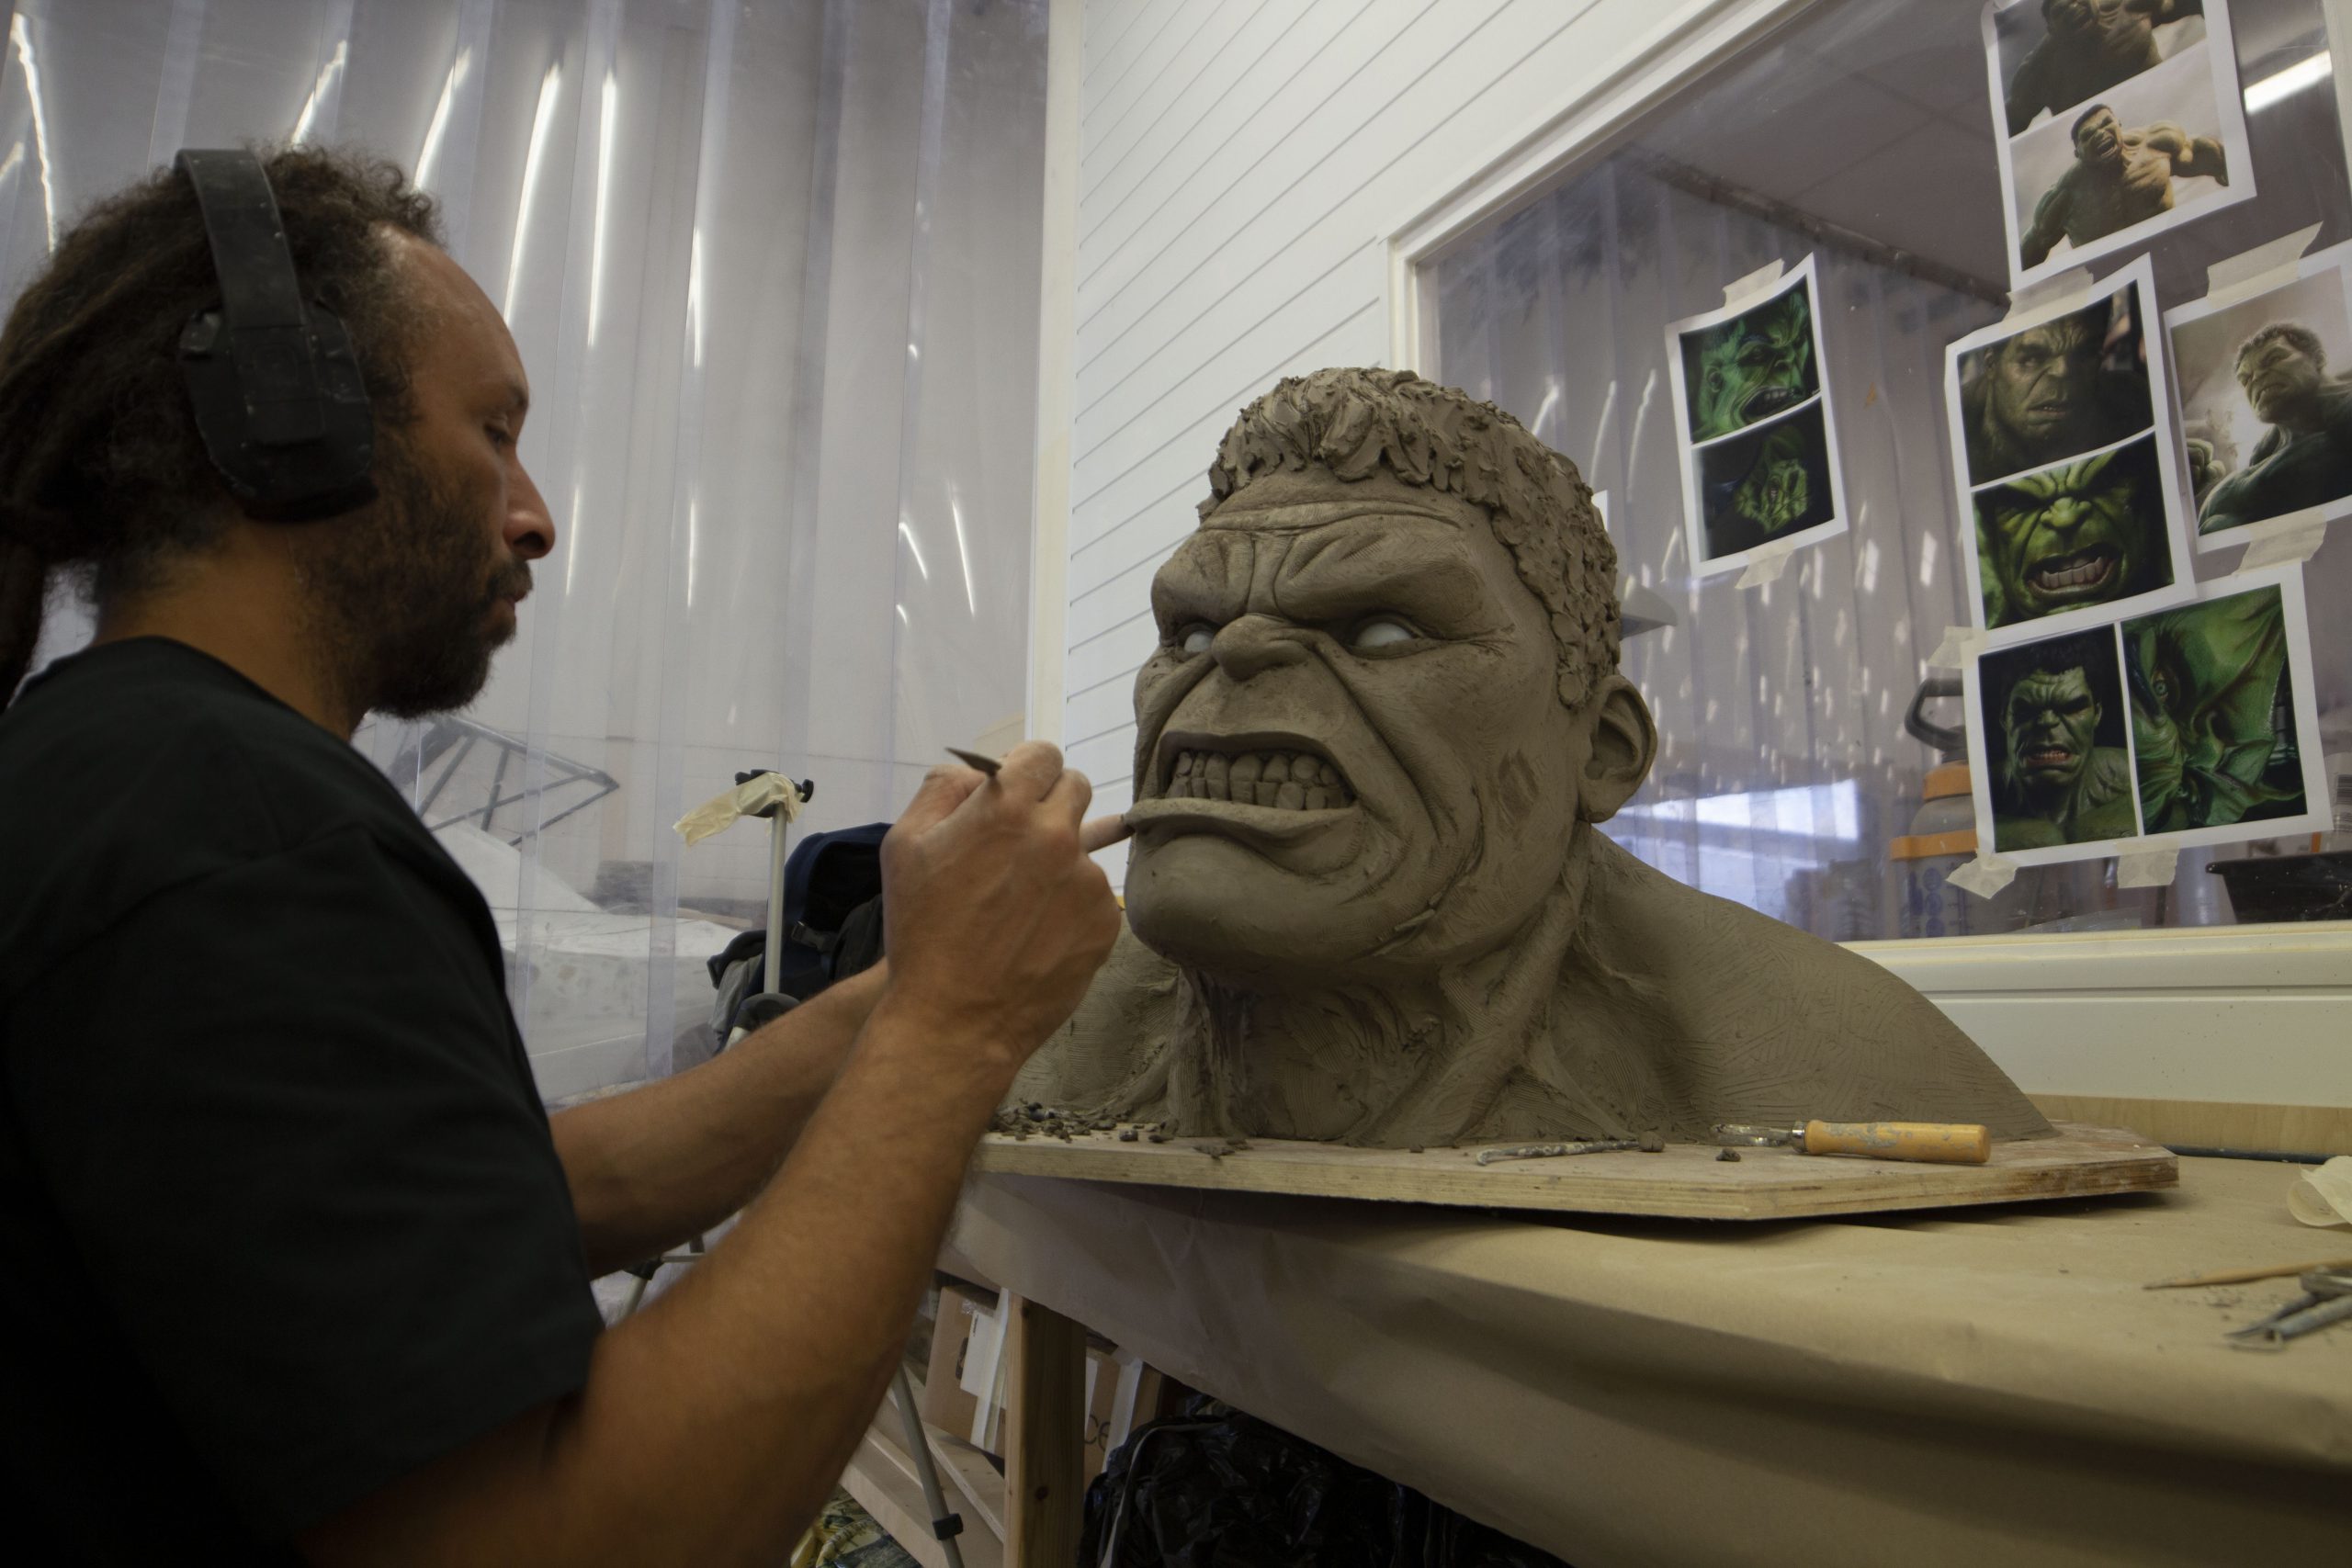 Hulk sculpture being made